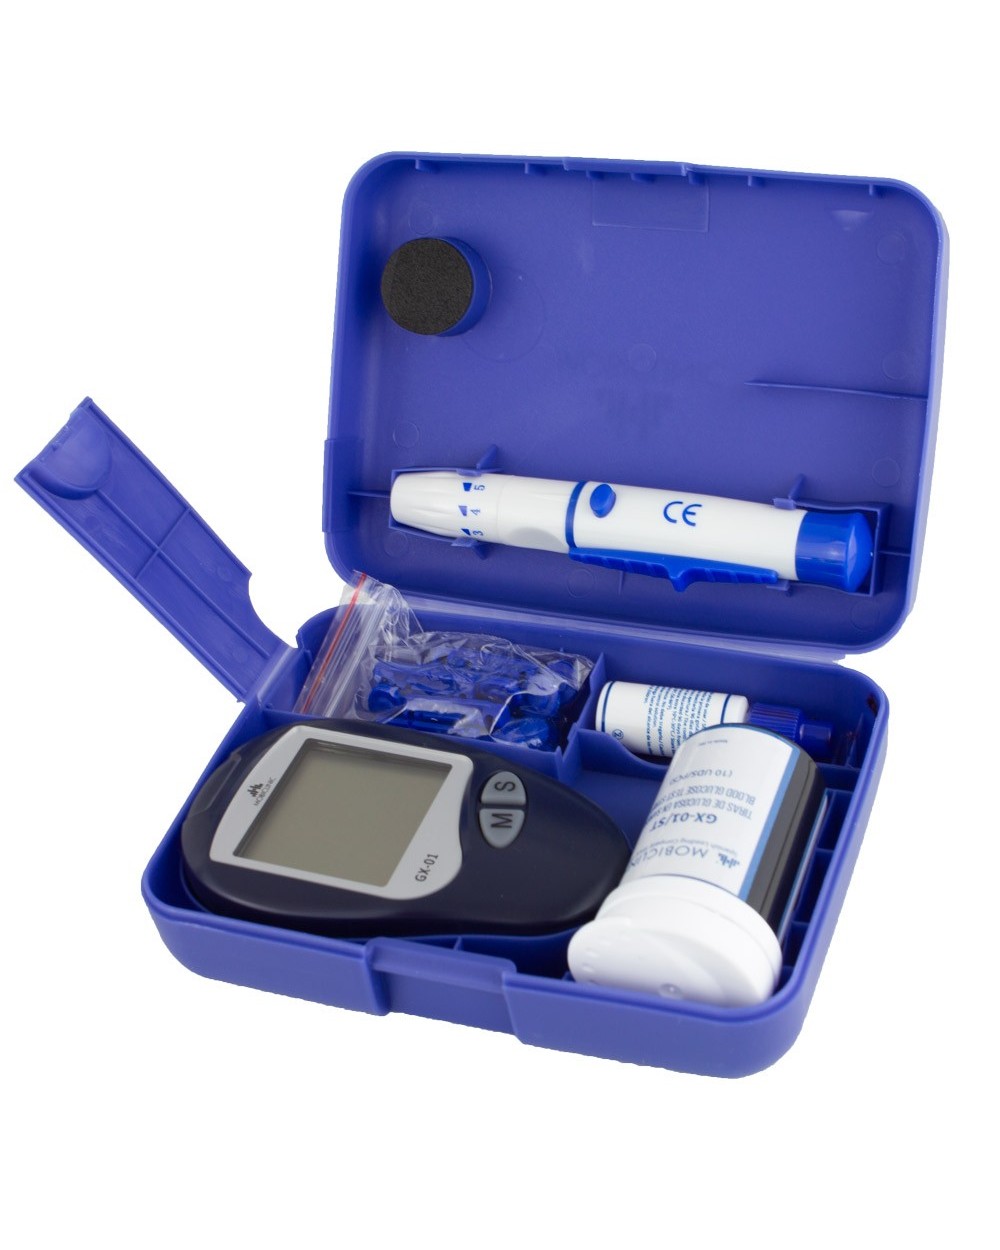 Glucómetro digital | Medidor de glucosa en sangre | Función memoria